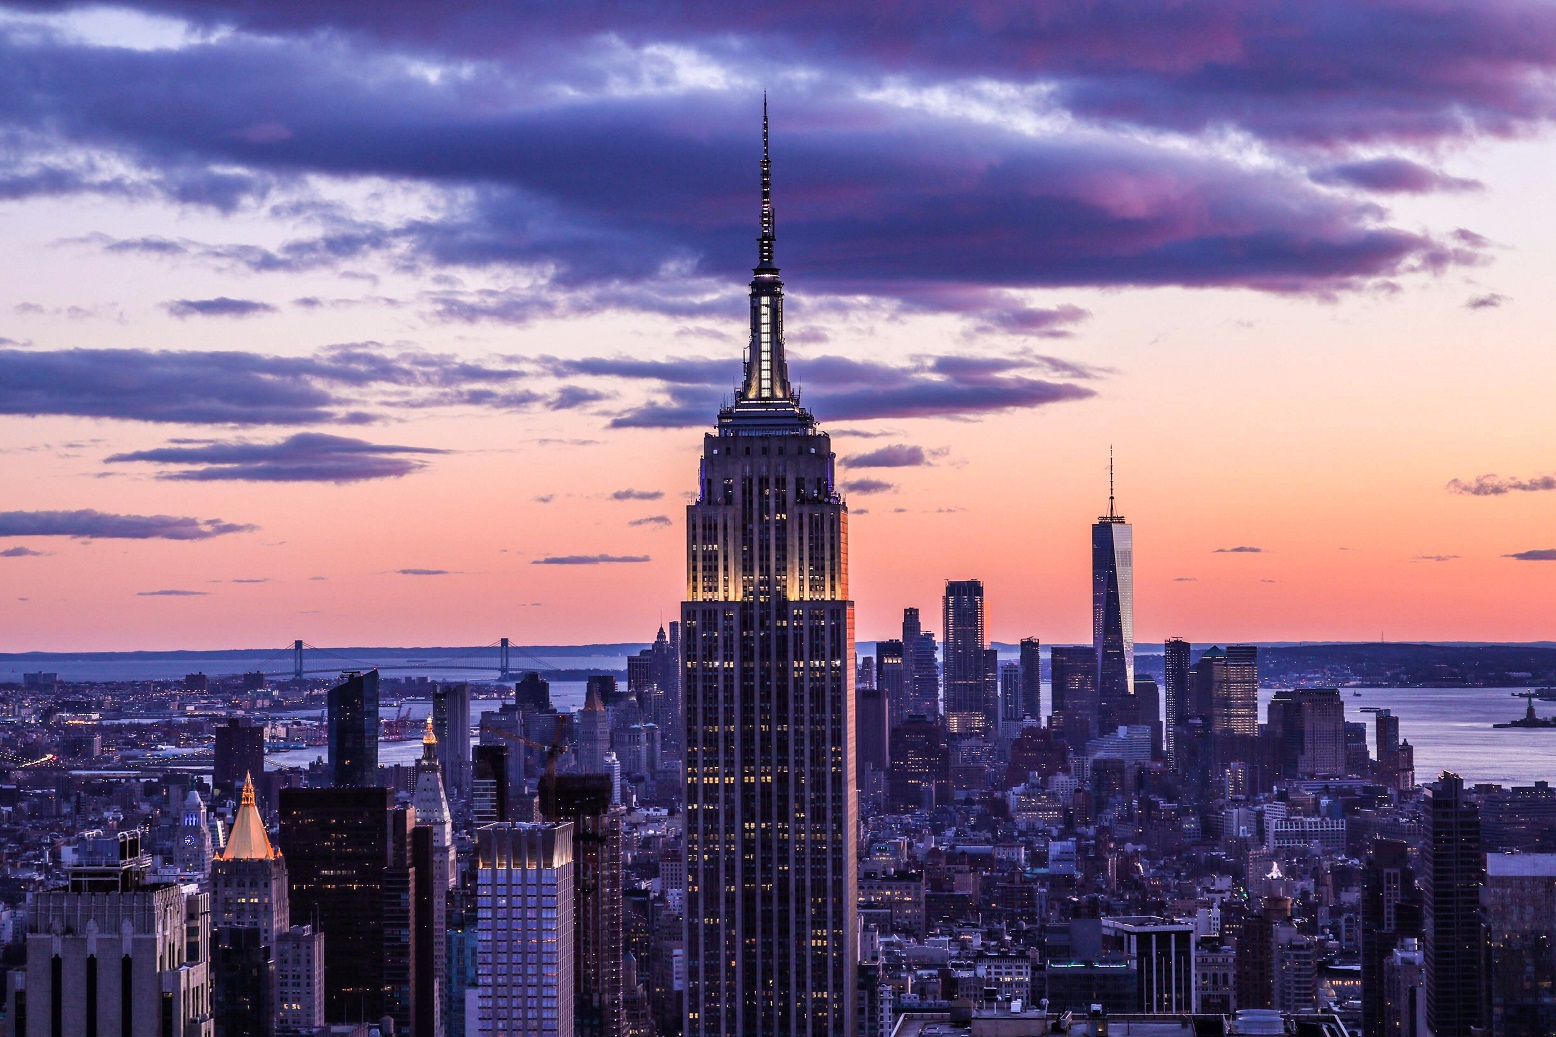 Image de l'Empire State Building